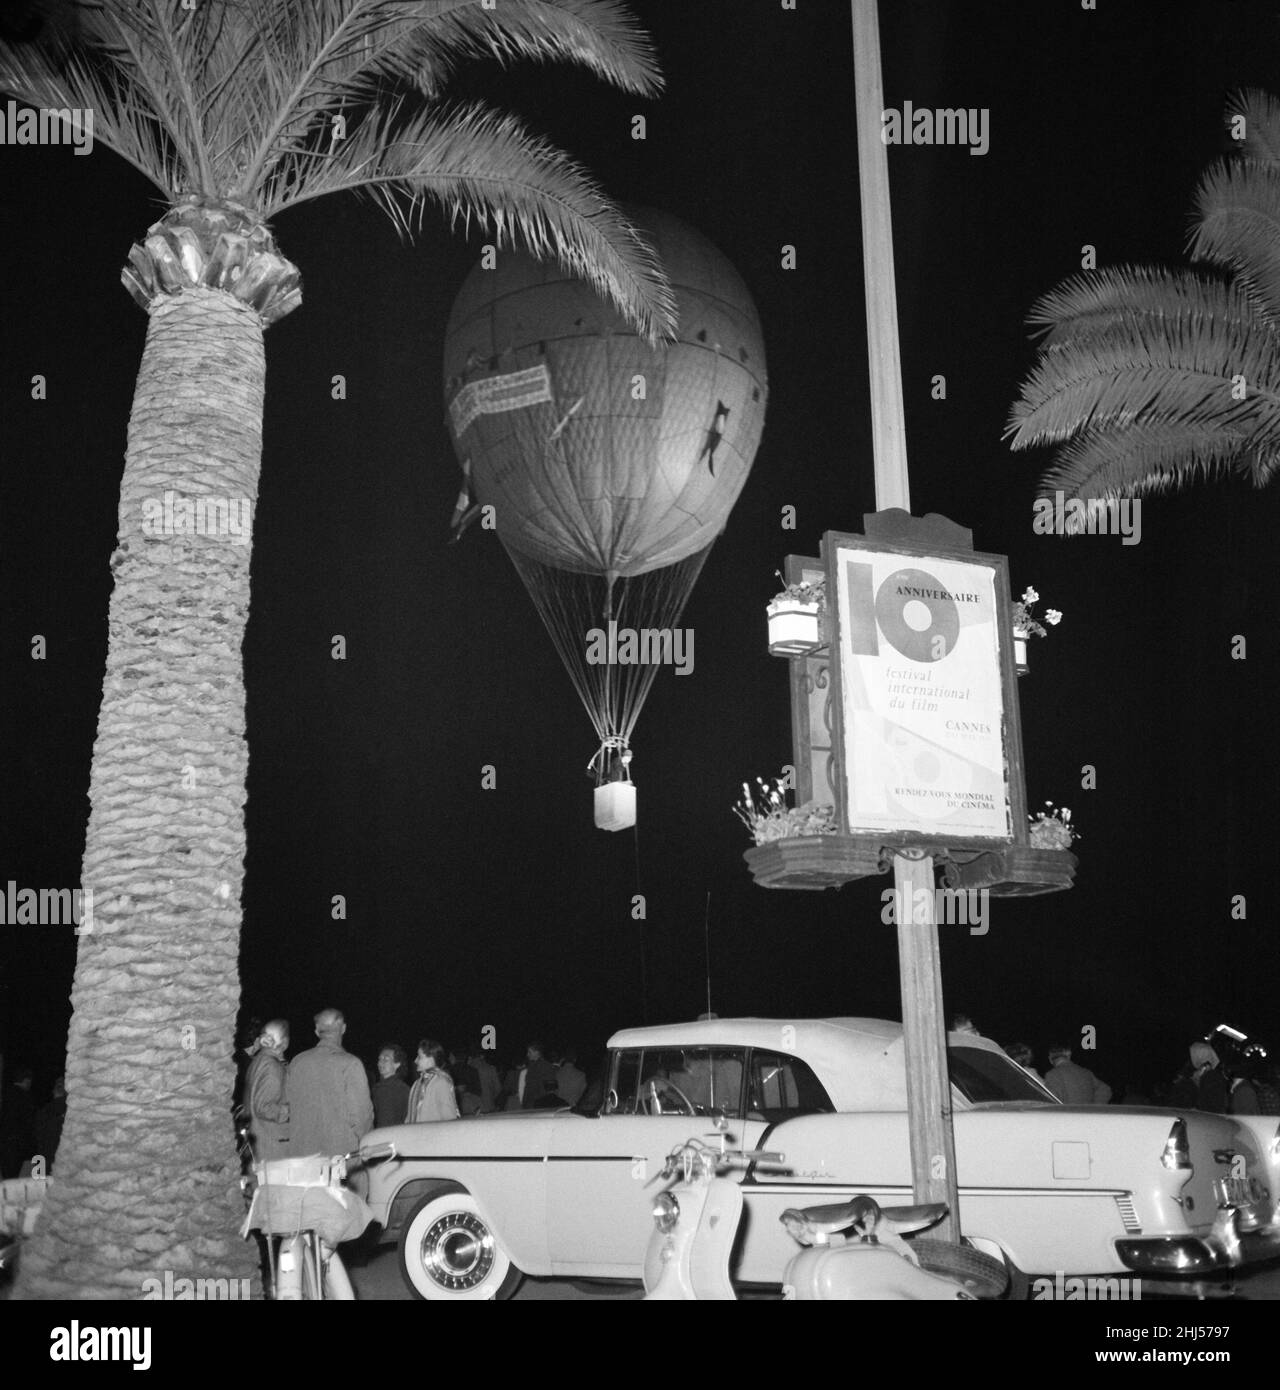 Filmfestspiele Von Cannes 1957. Heißluftballon am Eröffnungsabend der Filmfestspiele von Cannes, um den neuen Film des Filmproduzenten Mike Todd in 80 Tagen um die Welt zu bewerben. Cannes, Frankreich, 6th. Mai 1957. Stockfoto